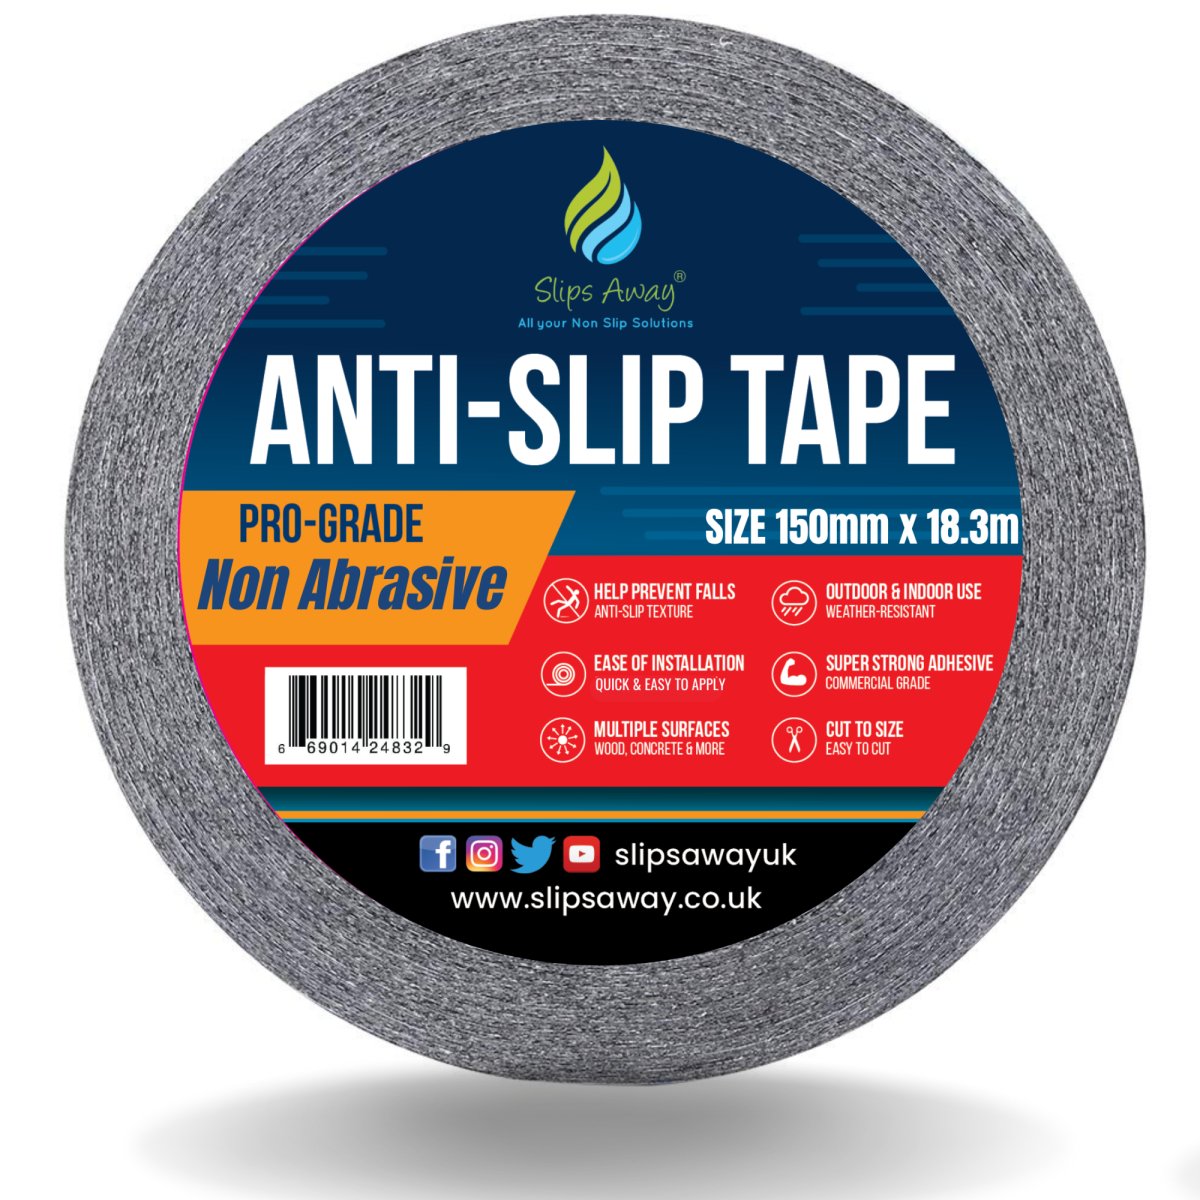 Non Abrasive Resilient Soft Touch Textured "Rubber Feel" Anti-Slip Tape - Slips Away - Anti slip tape - H3408N-Black-Resilient-150mm -